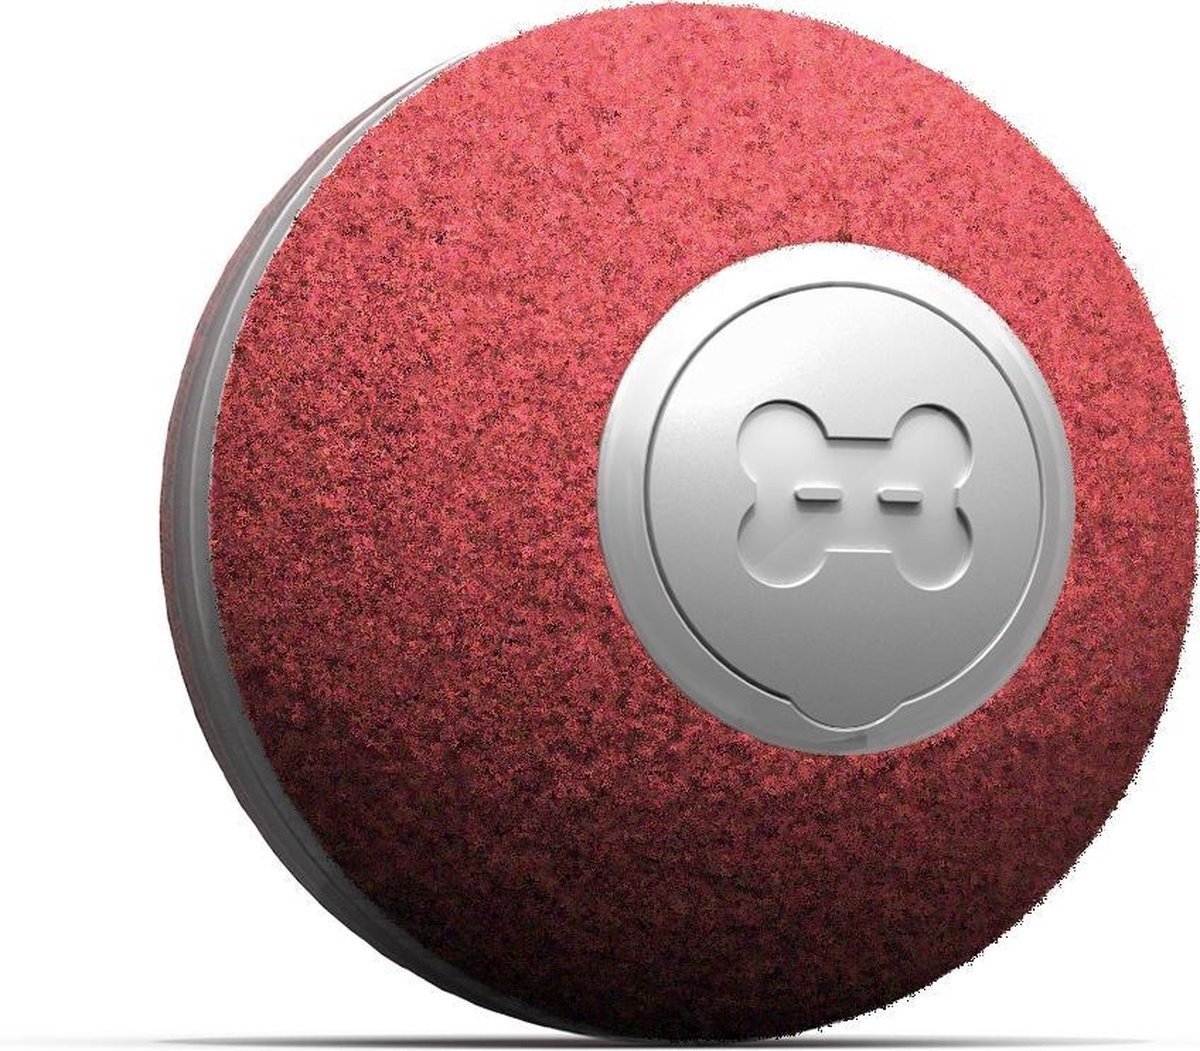 auf Rolle günstig Kaufen-Cheerble mini ball 2.0 - Intelligenter interaktiver selbstrollender Ball für Katzen - 3 Spielmodi - Katzenspielzeug - USB aufladbar - Rot. Cheerble mini ball 2.0 - Intelligenter interaktiver selbstrollender Ball für Katzen - 3 Spielmodi - Katzen